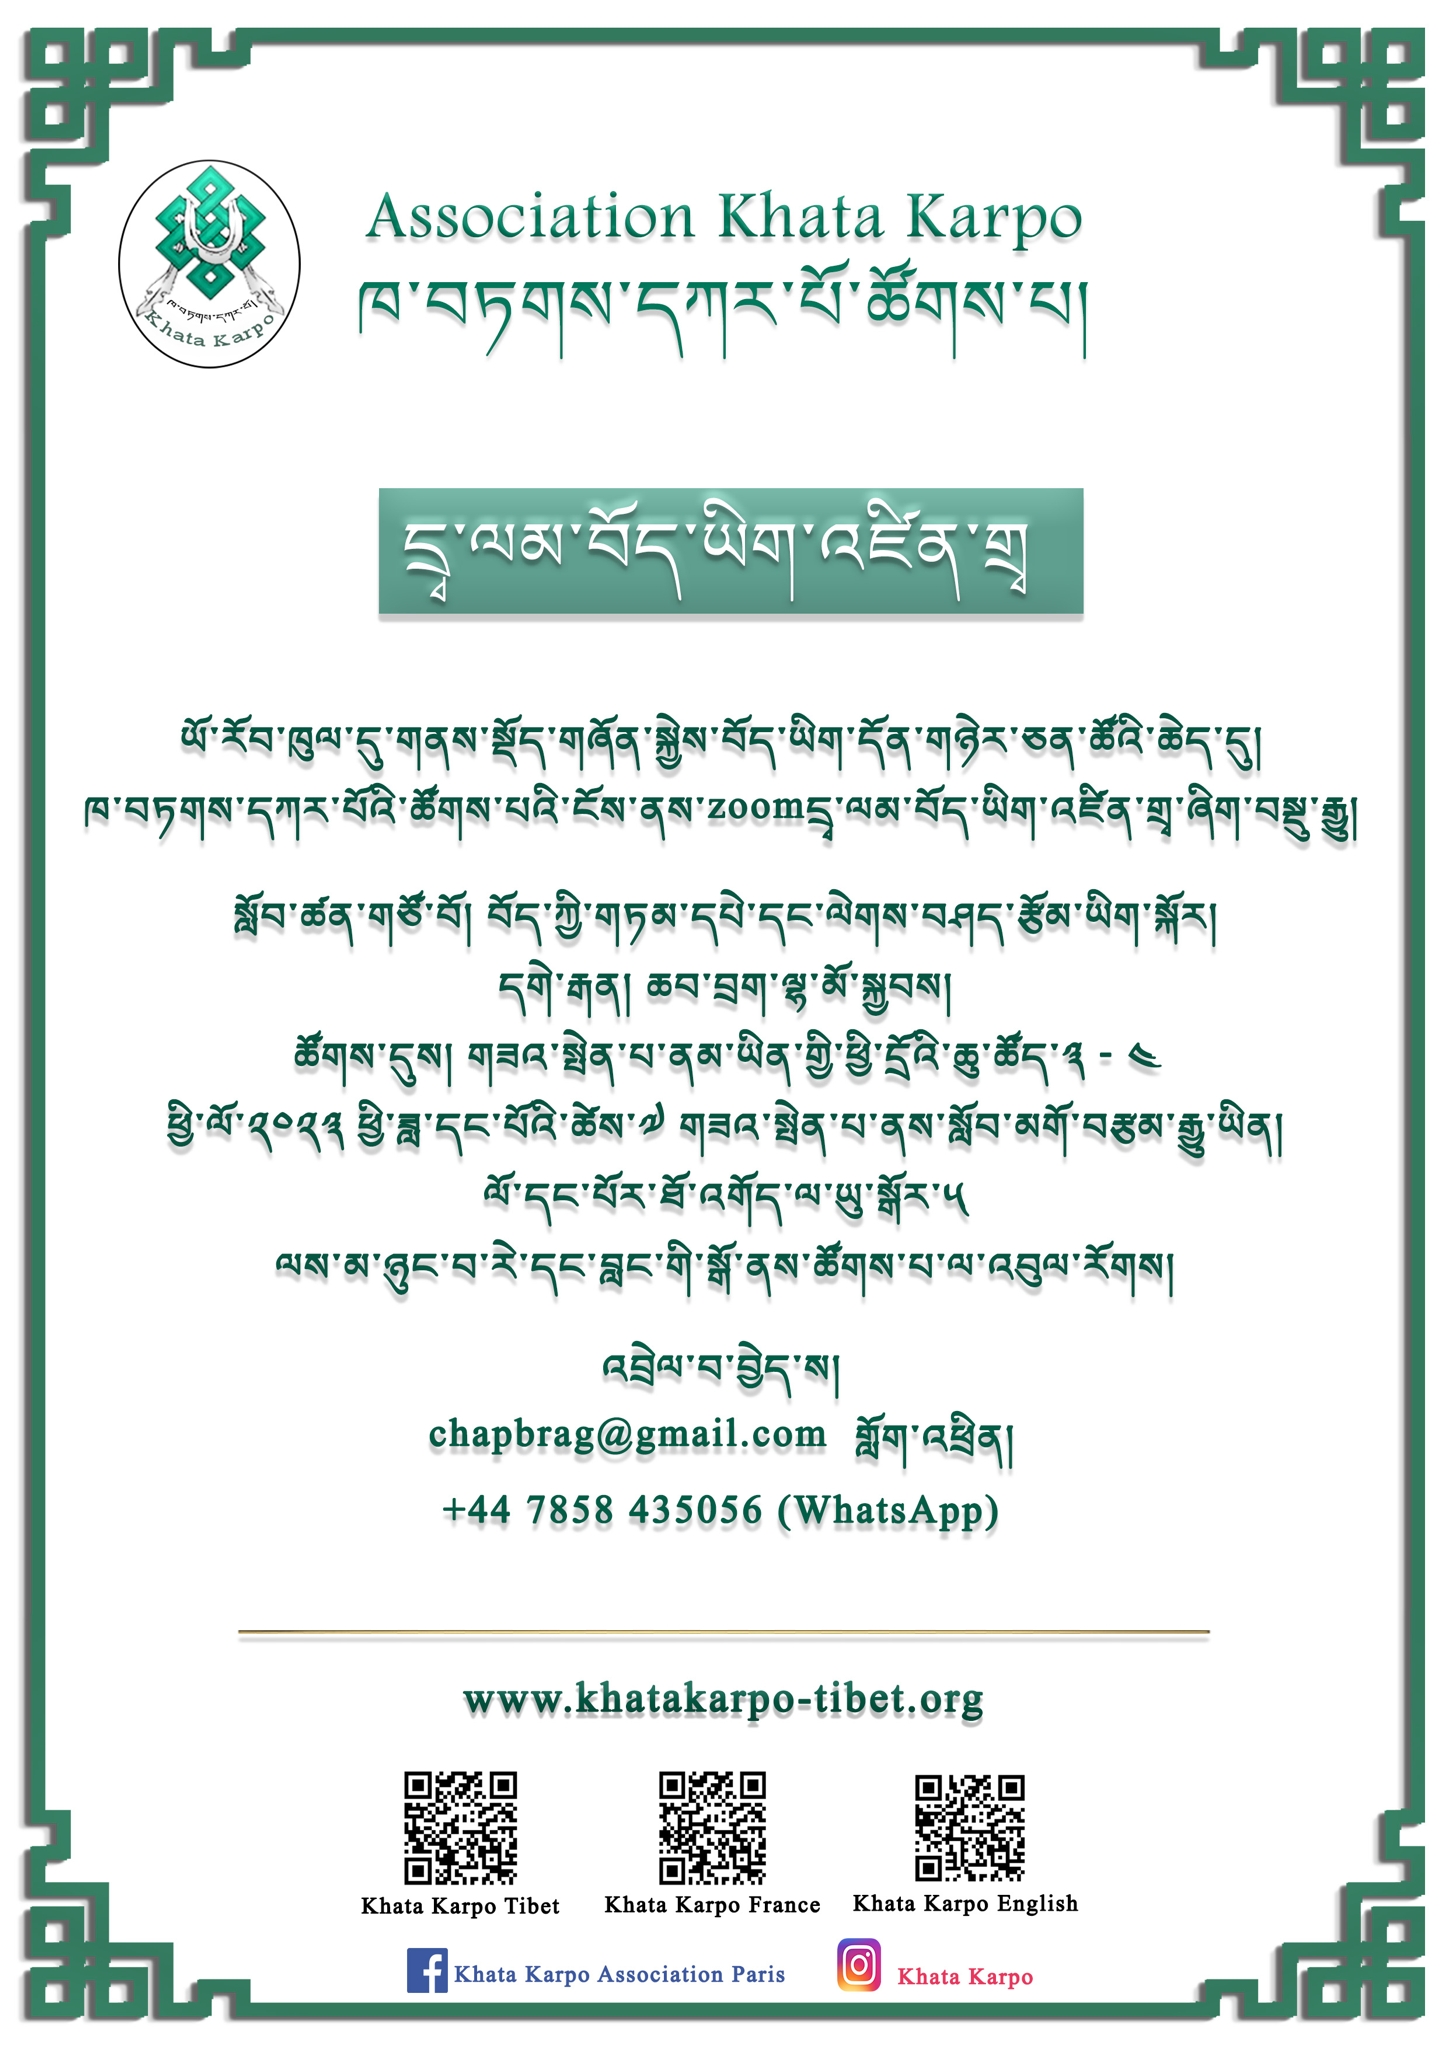 KHATA KARPO COURS tibetain enligne en 21 02 2022